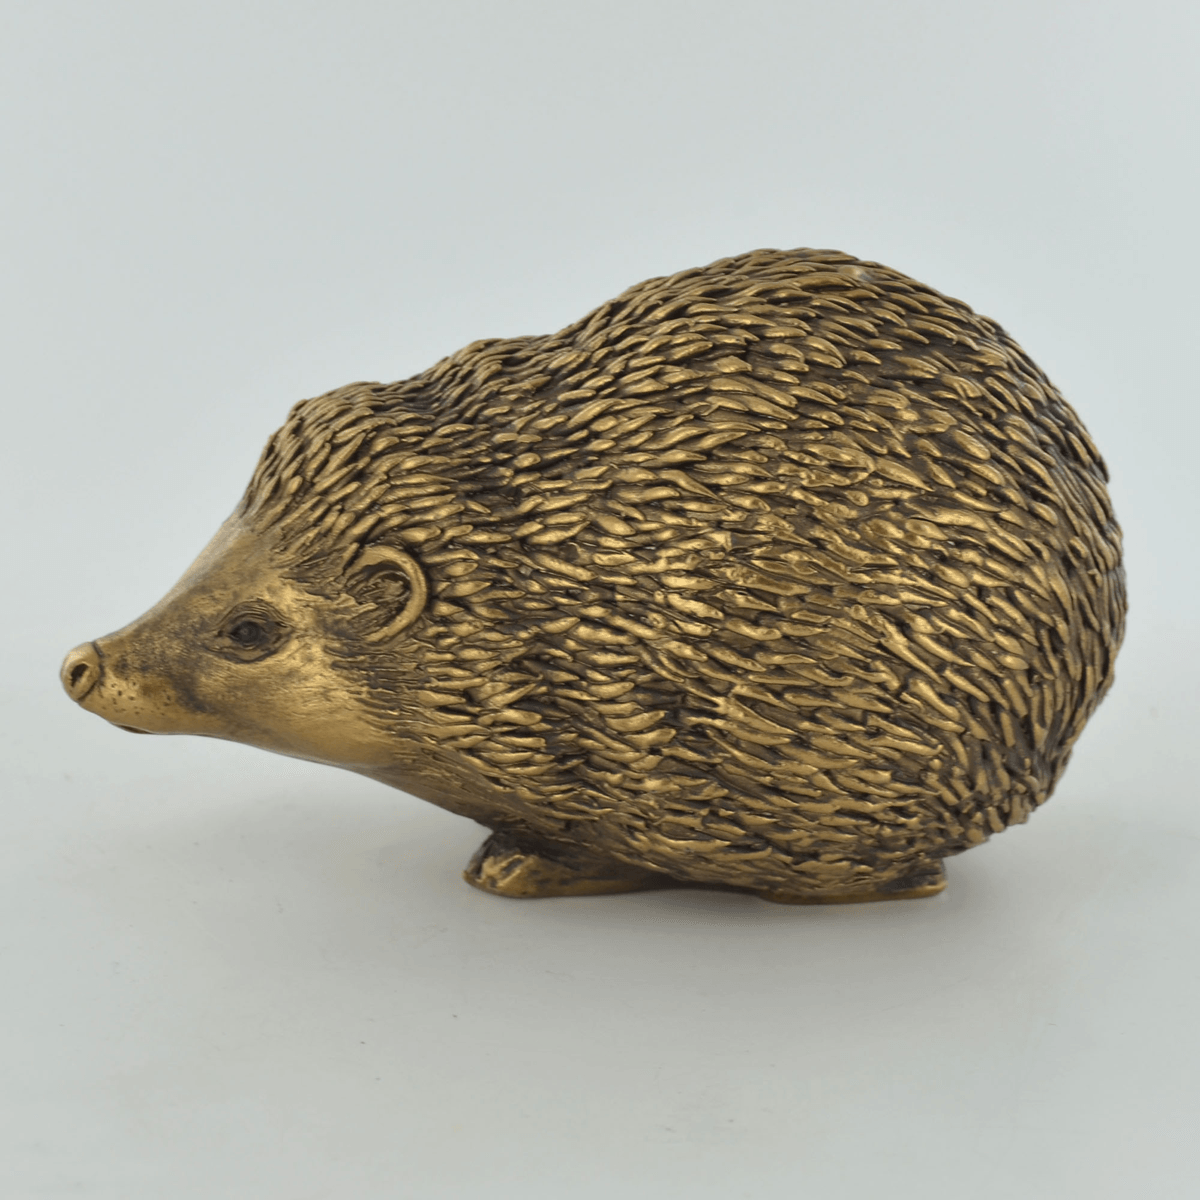 Bronze Effect Hedgehog Ornament - TwoBeeps.co.uk